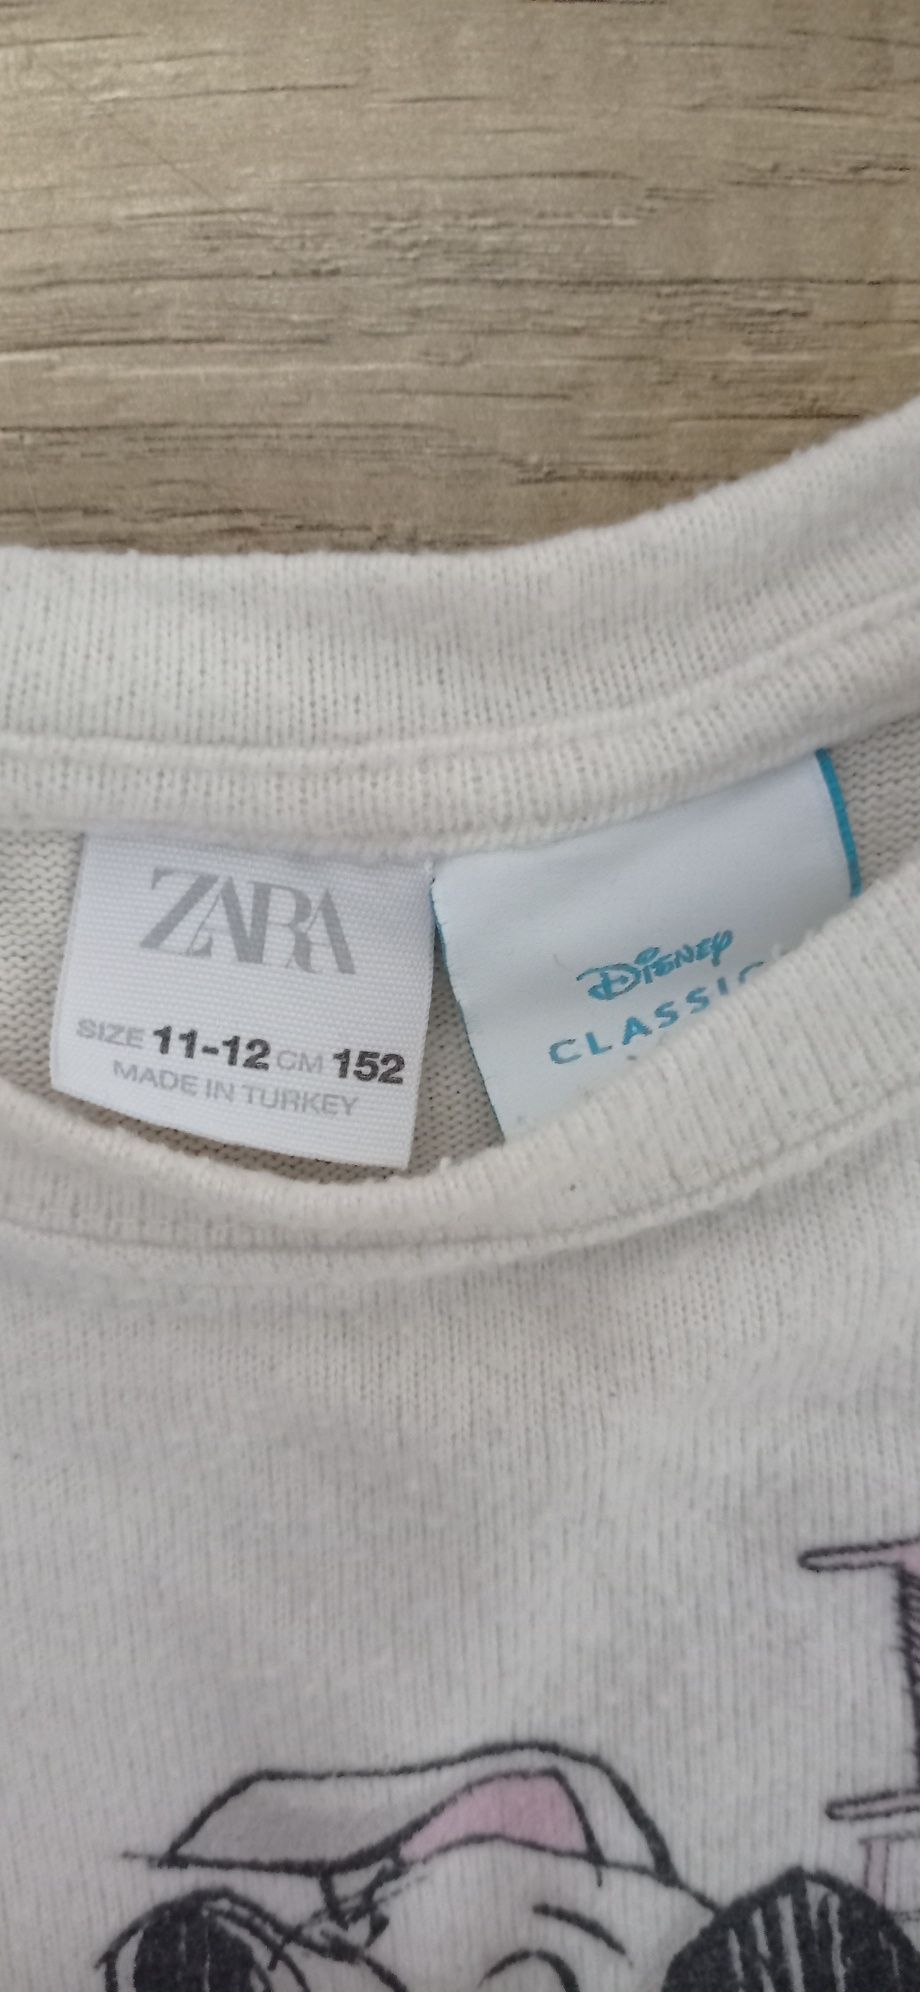 Cienki sweterek Zara 11-12lat